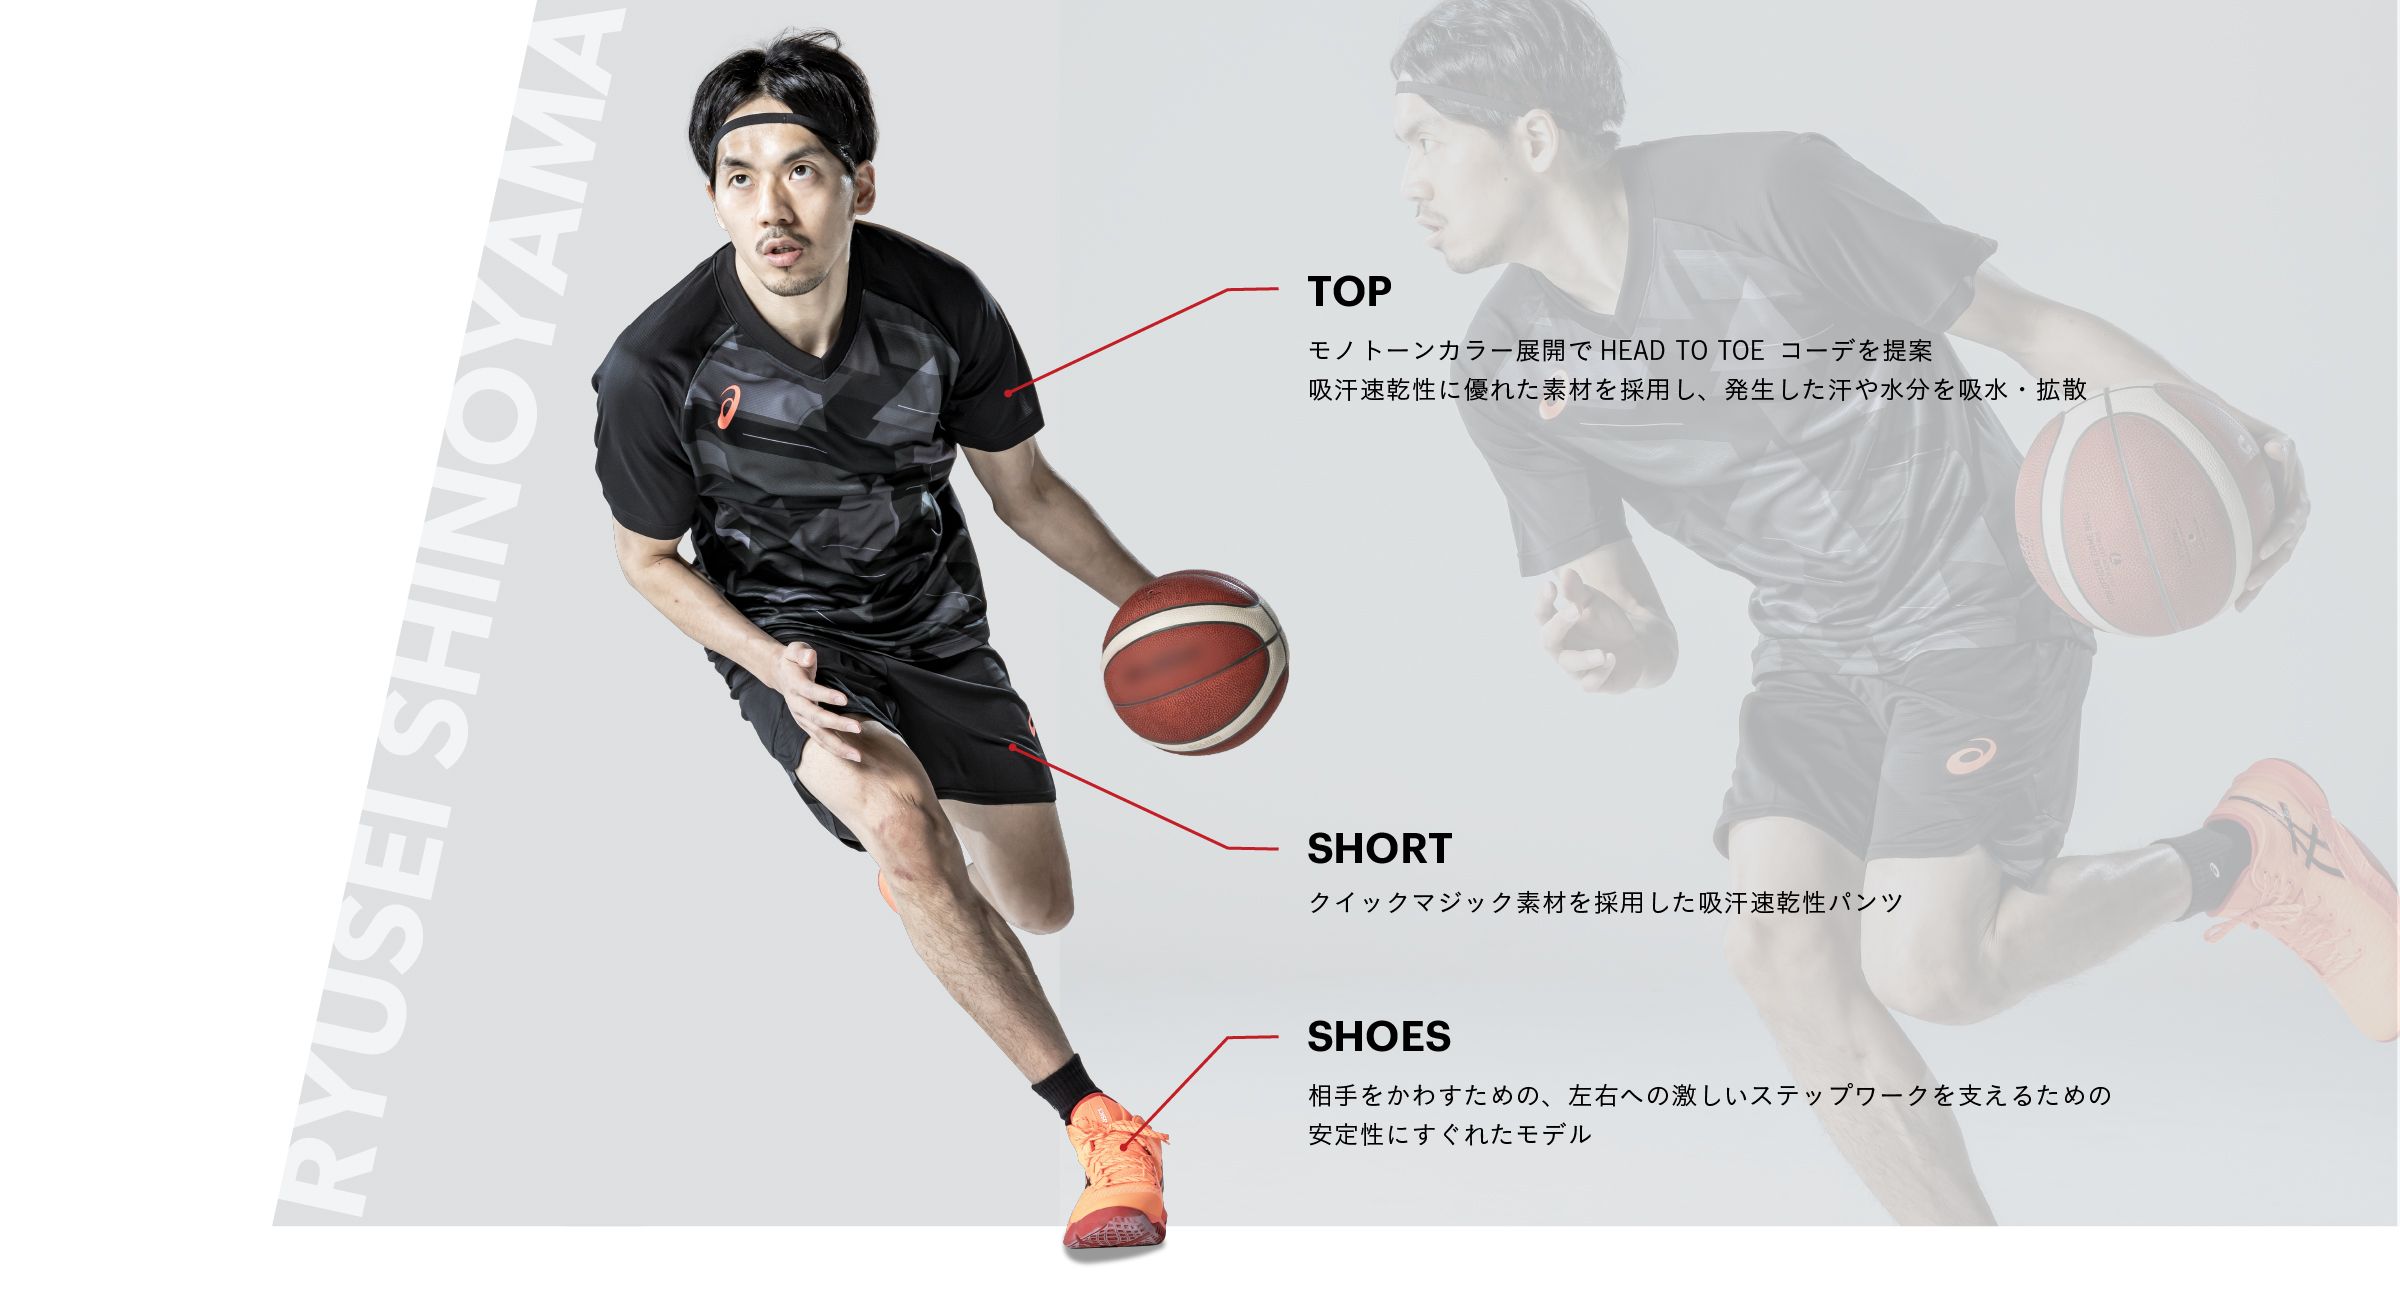 Asics公式 篠山 竜青選手 バスケットボール アシックス